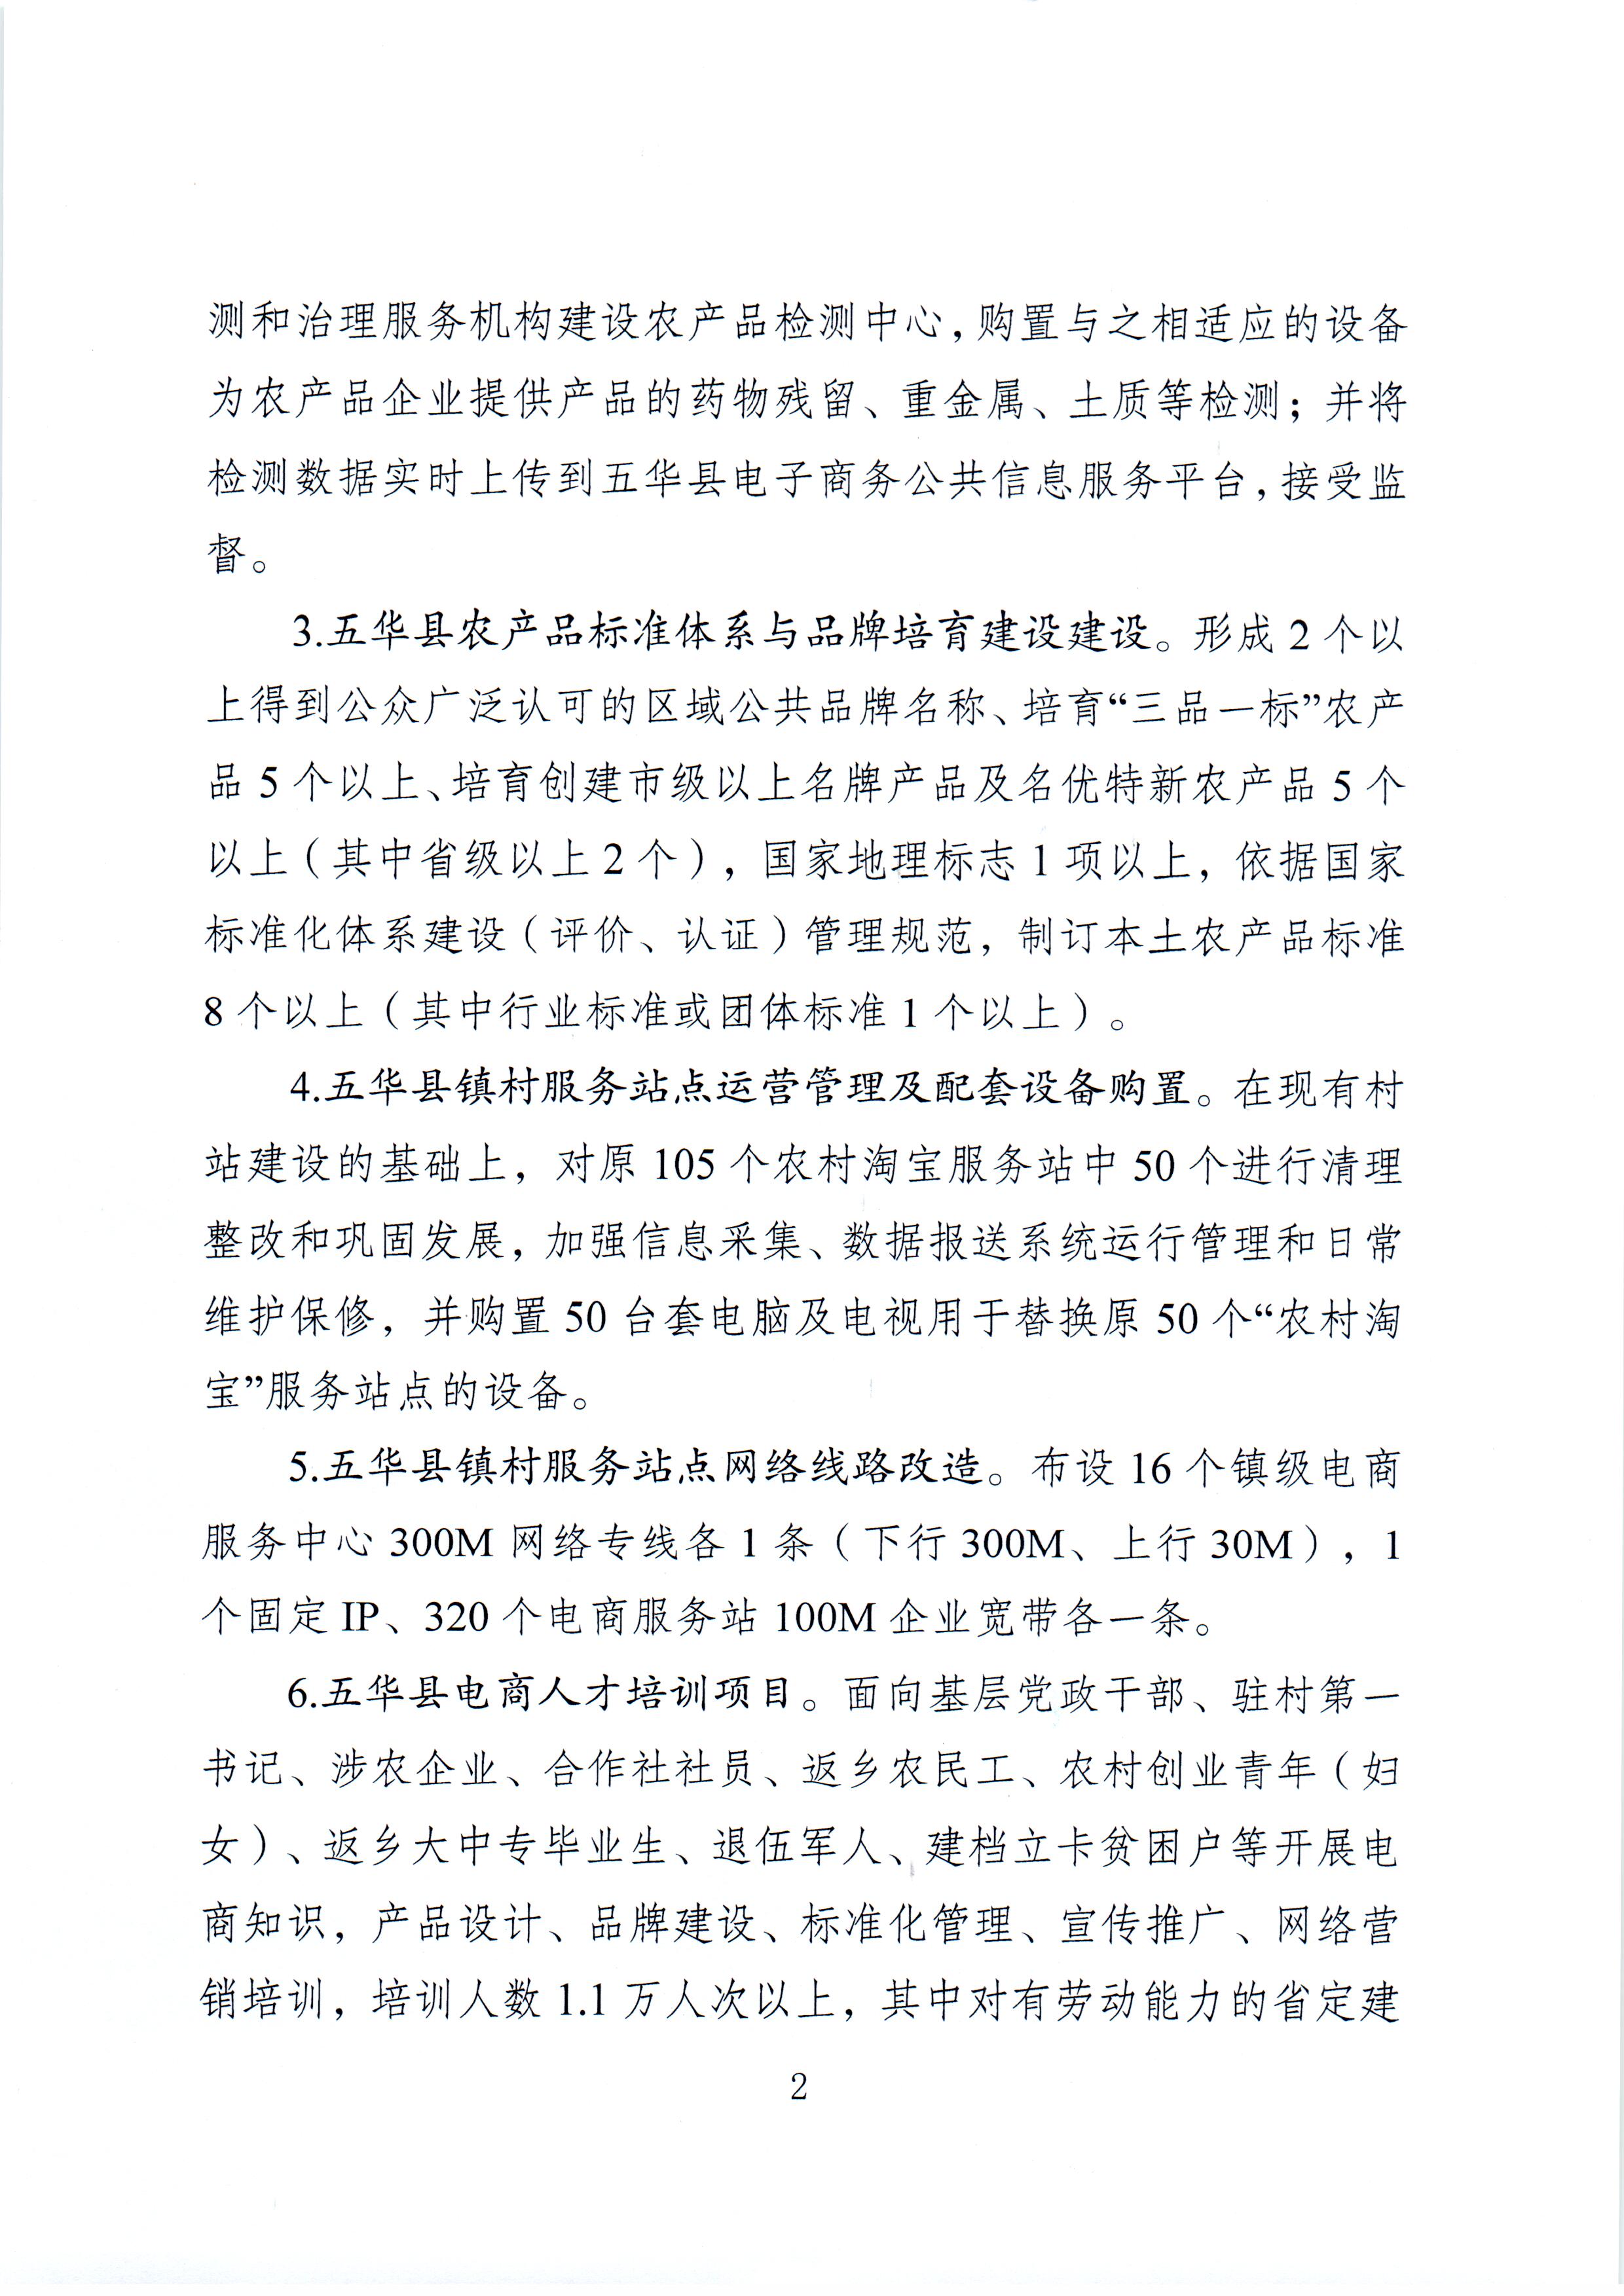 1、五华县电子商务进农村综合示范项目2021年3月工作推进情况（领导小组办公室）--（2021年4月5日确定版） (2).jpg